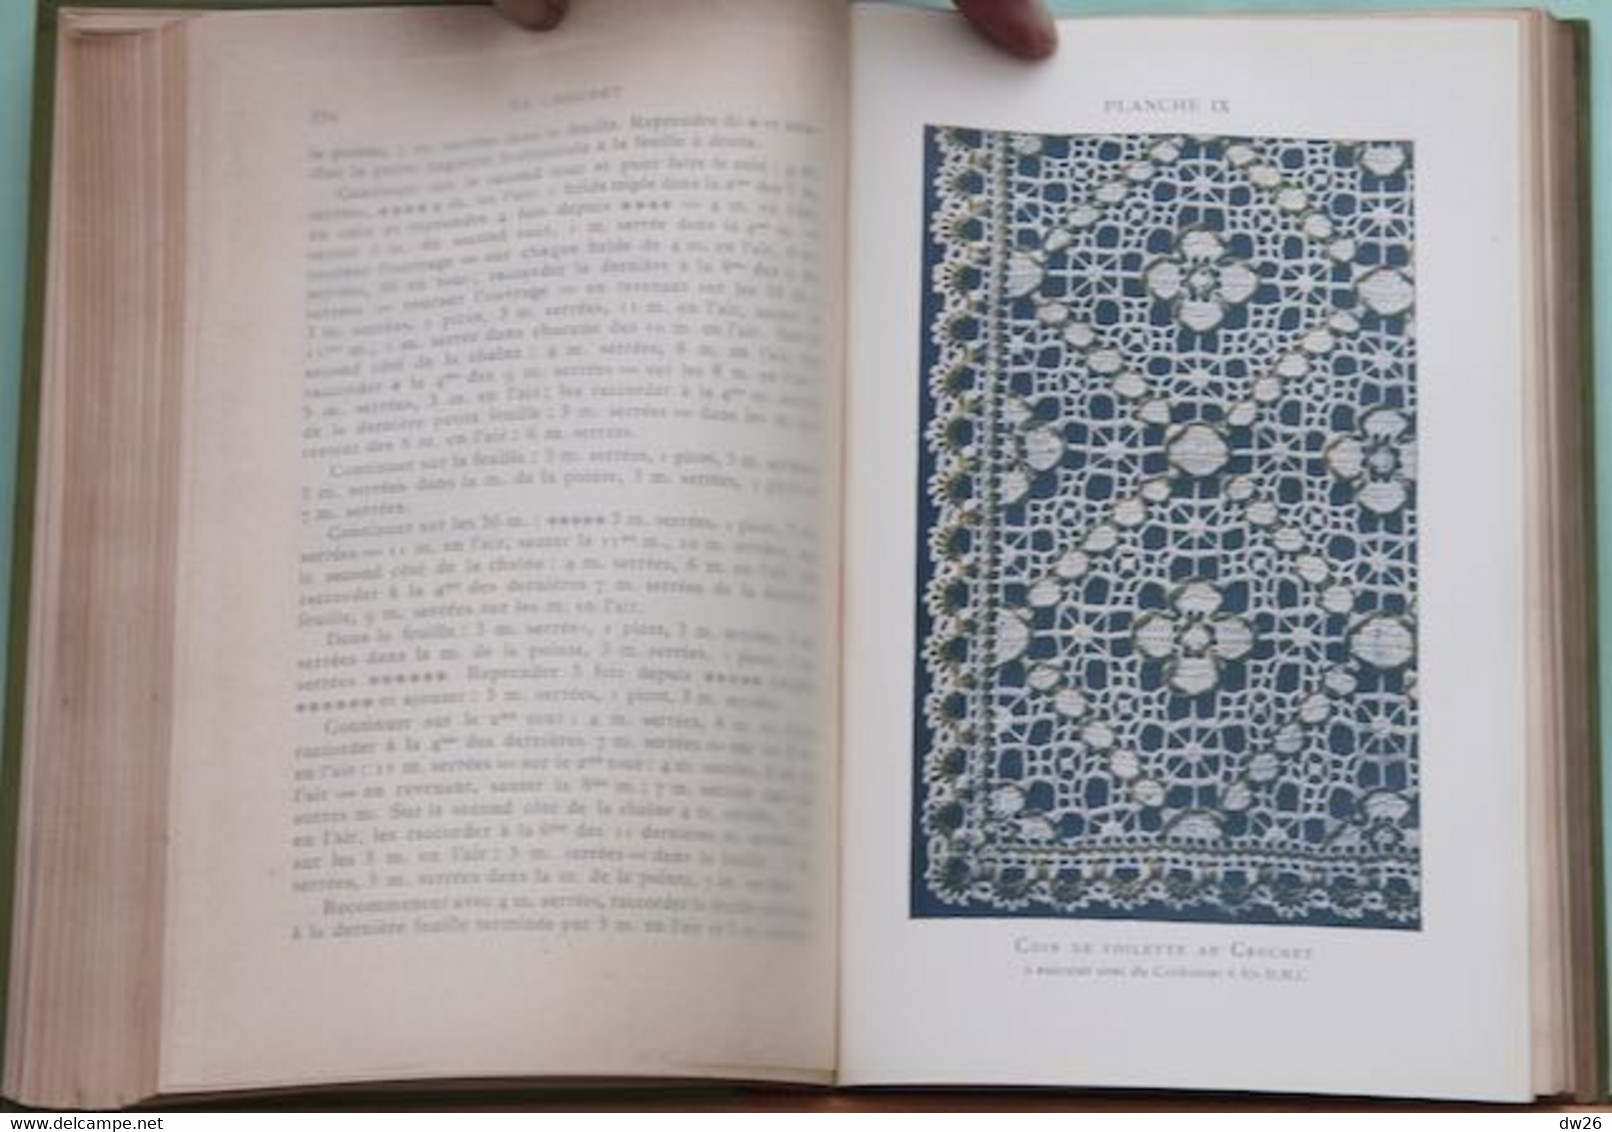 Livre D.M.C. 1936: Encyclopédie Des Ouvrages De Dames Par Thérèse De Dillmont (couture, Broderie, Crochet...) - Fashion